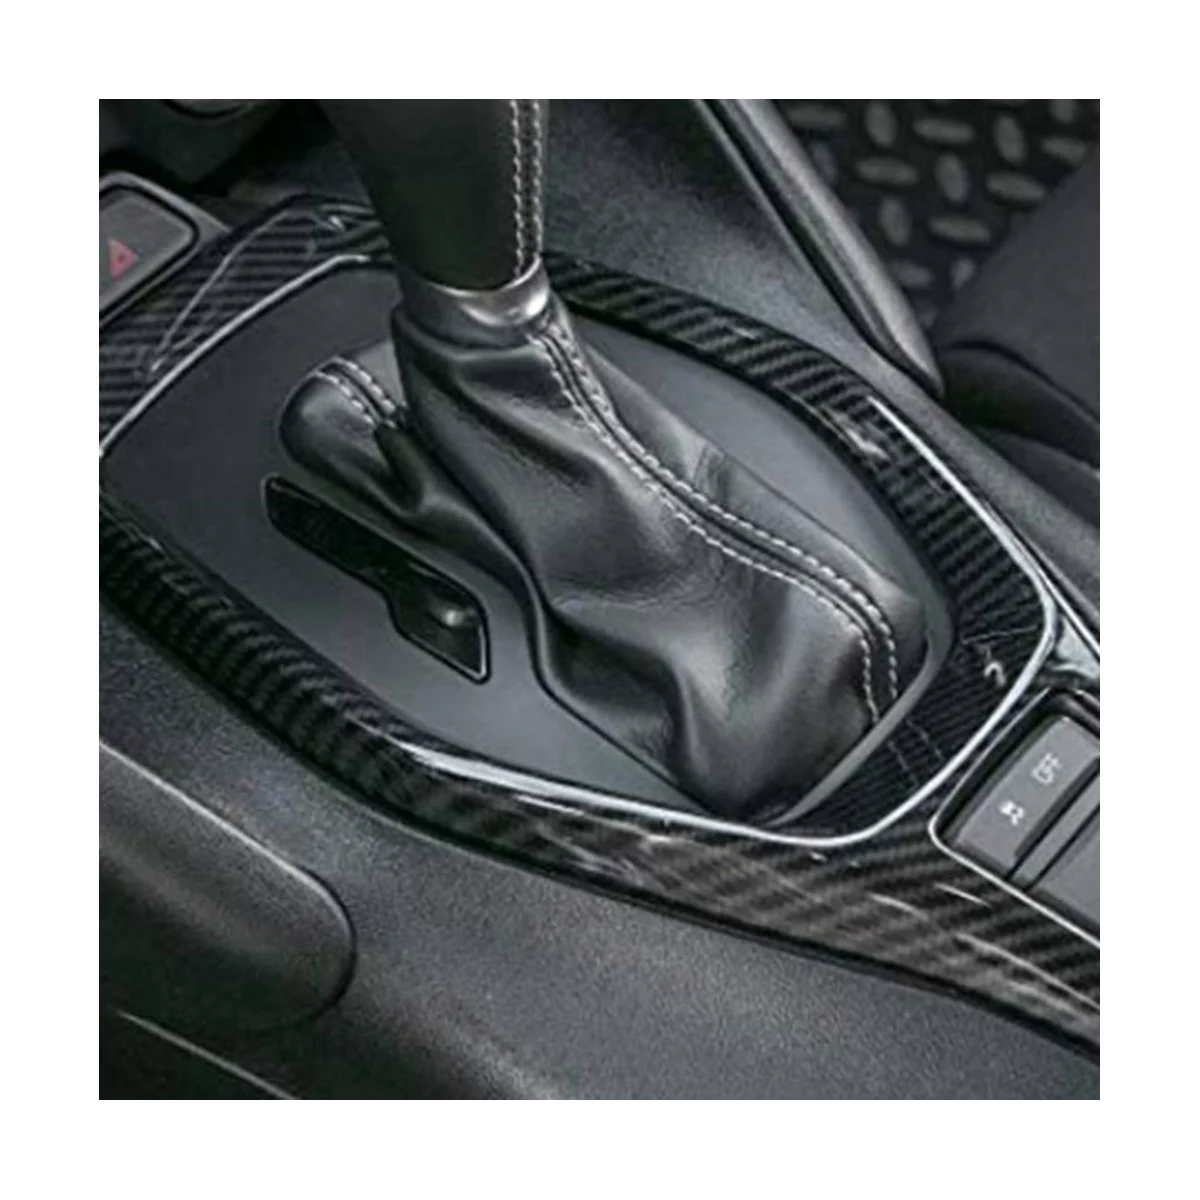 עבור שברולט קמארו 2017 הפנים אביזרי רכב סטיילינג ציוד הבקרה לקצץ לכסות לקצץ מסגרת רצועת מדבקה קיט . ' - ' . 1